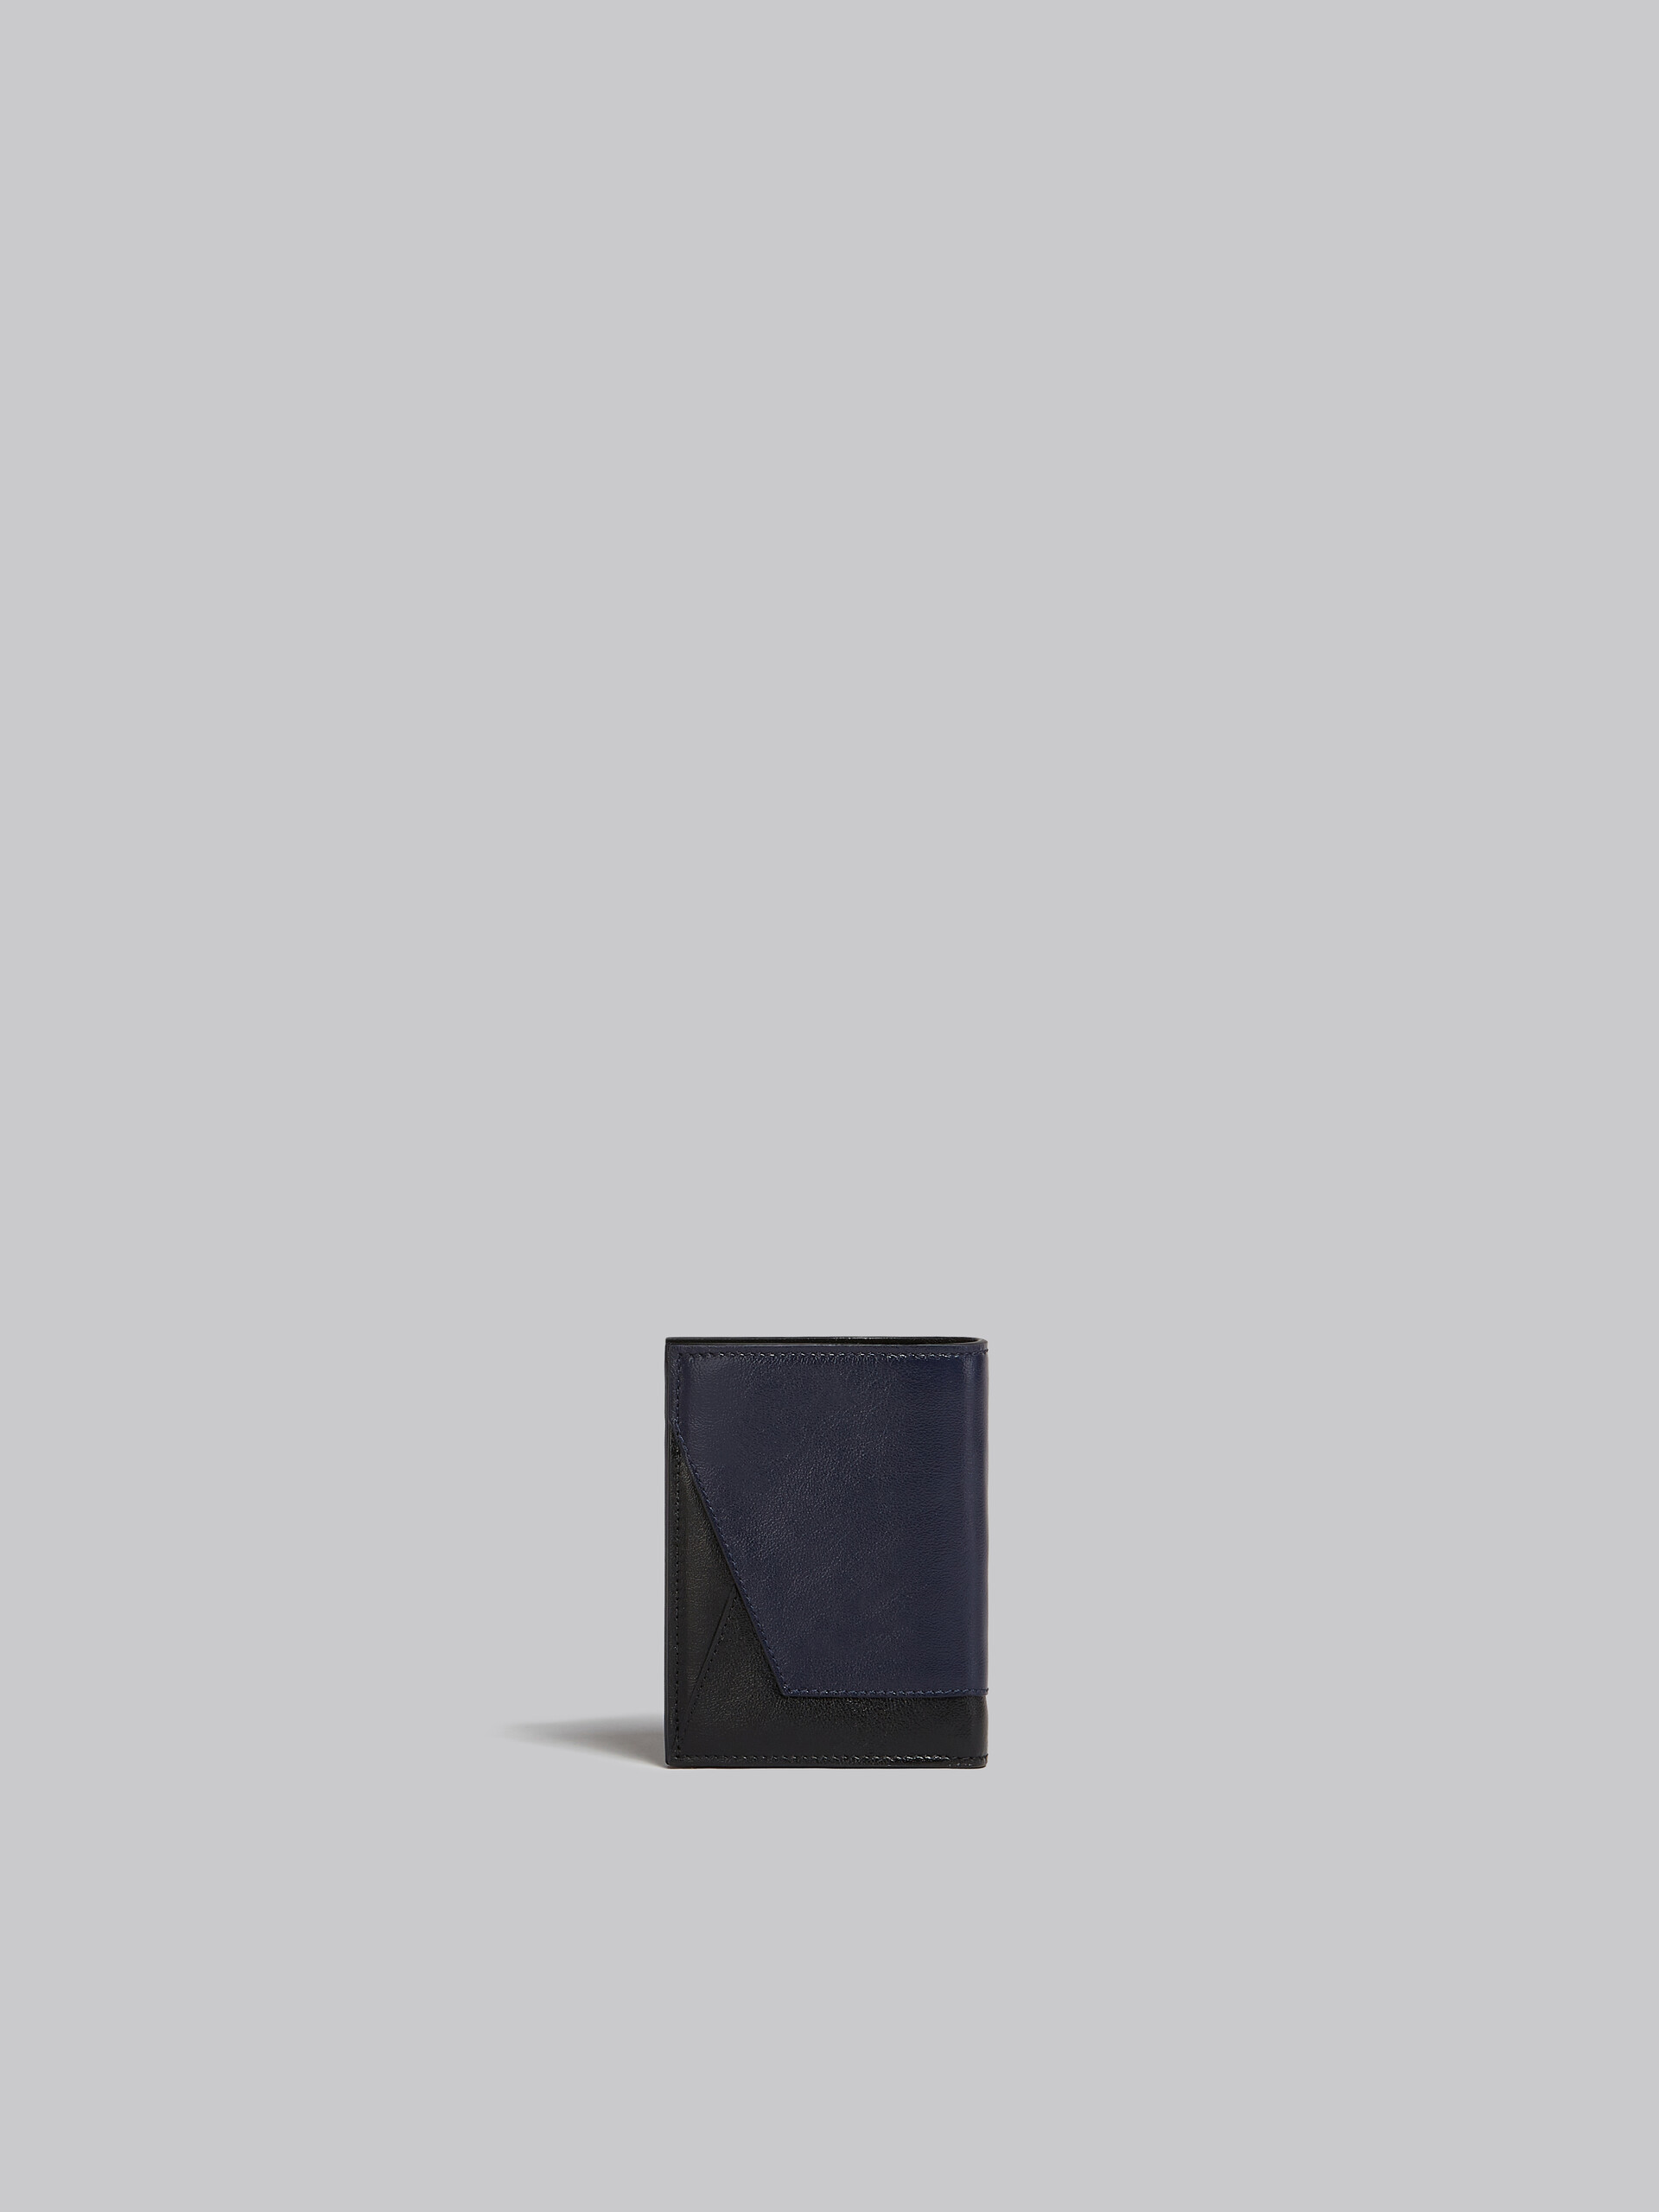 ネイビーブルーとブラック レザー製二つ折りウォレット - 財布 - Image 3